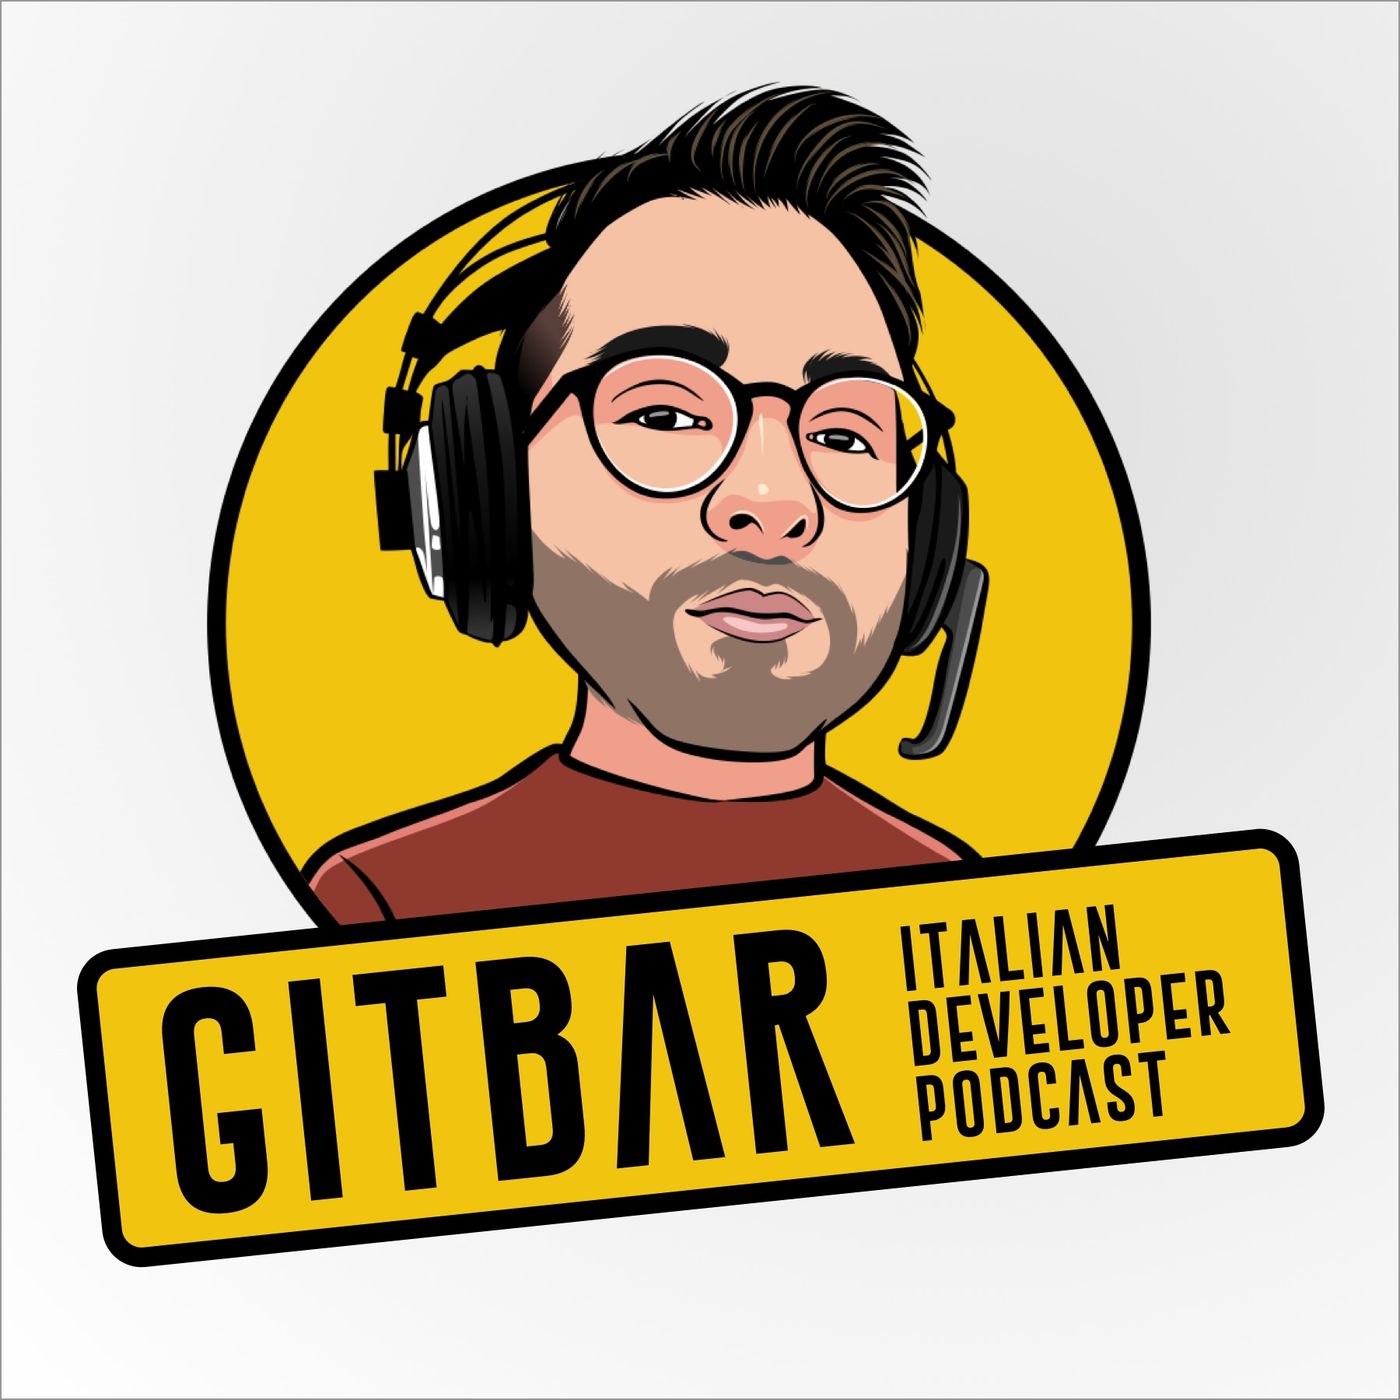 Gitbar - Italian developer podcast